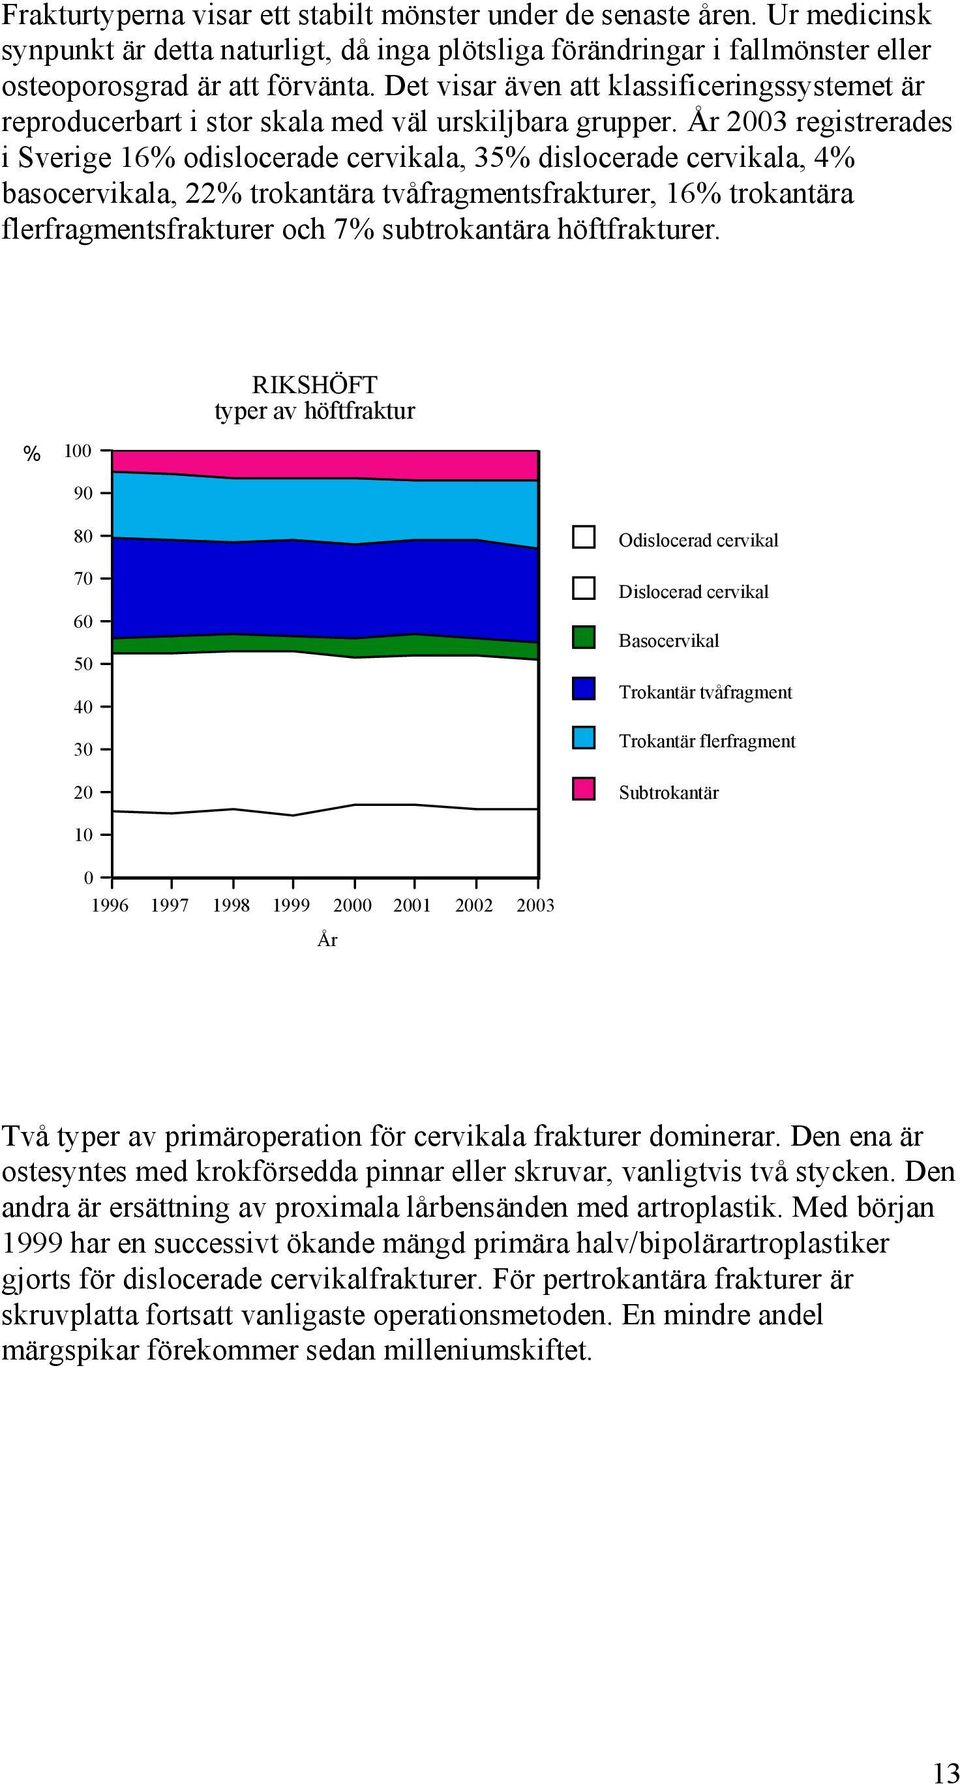 År 3 registrerades i Sverige 16% odislocerade cervikala, 35% dislocerade cervikala, 4% basocervikala, 22% trokantära tvåfragmentsfrakturer, 16% trokantära flerfragmentsfrakturer och 7% subtrokantära